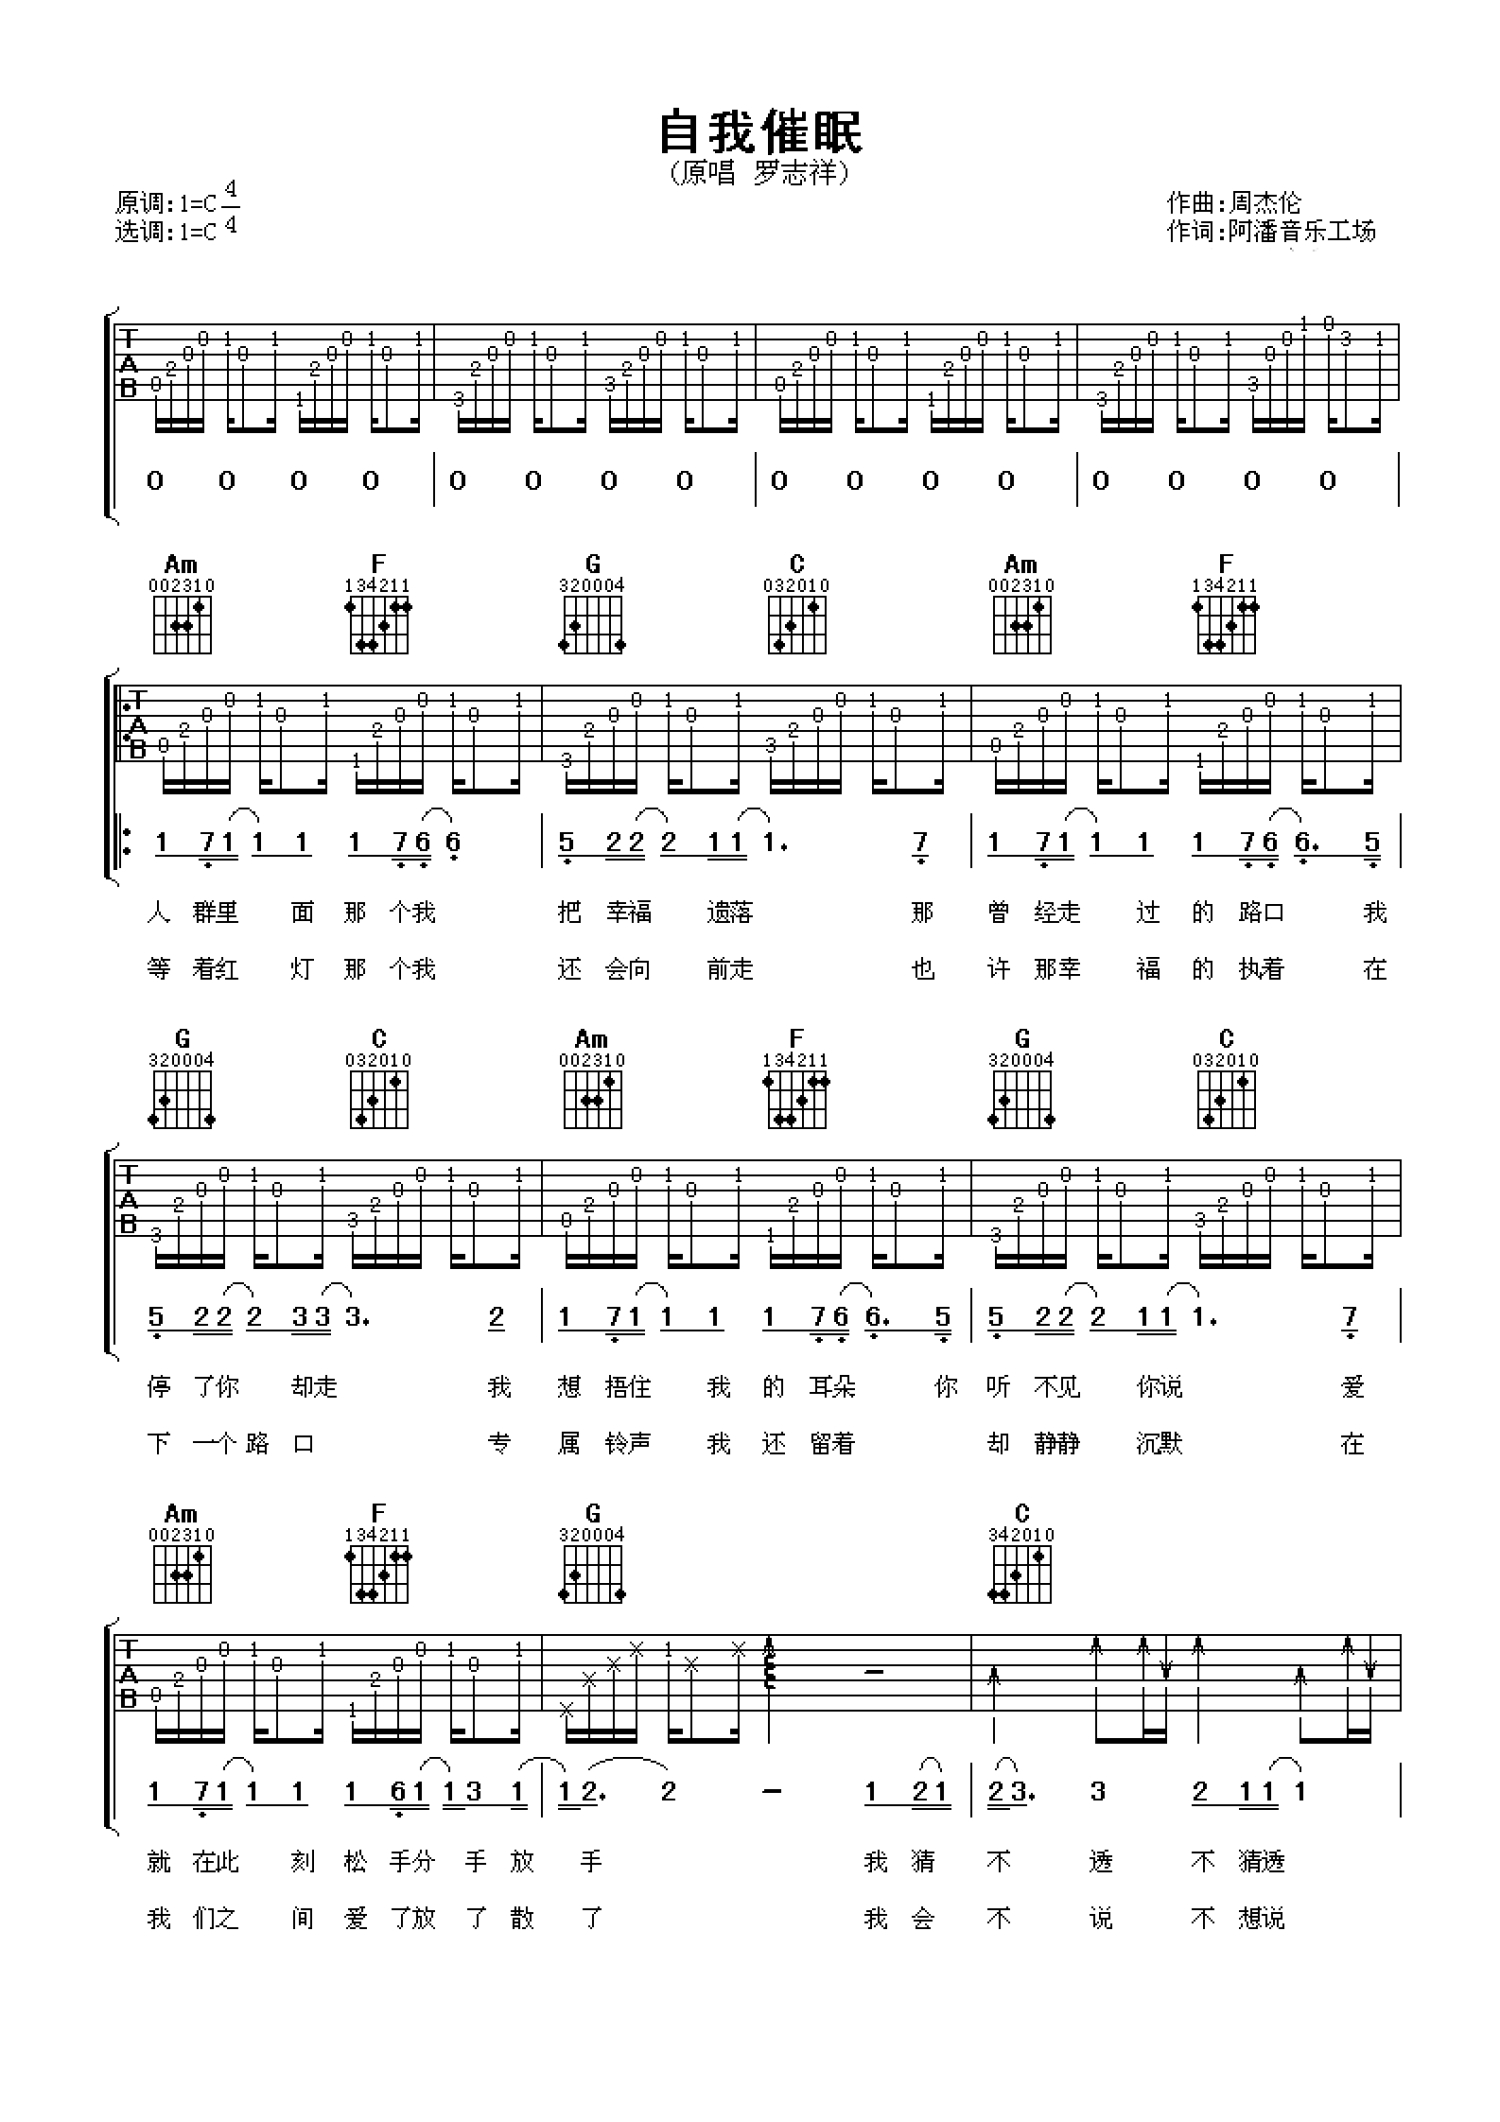 催眠吉他谱 催眠吉他谱简单版-催眠吉他谱TXT 催眠吉他谱C调查字典简谱网